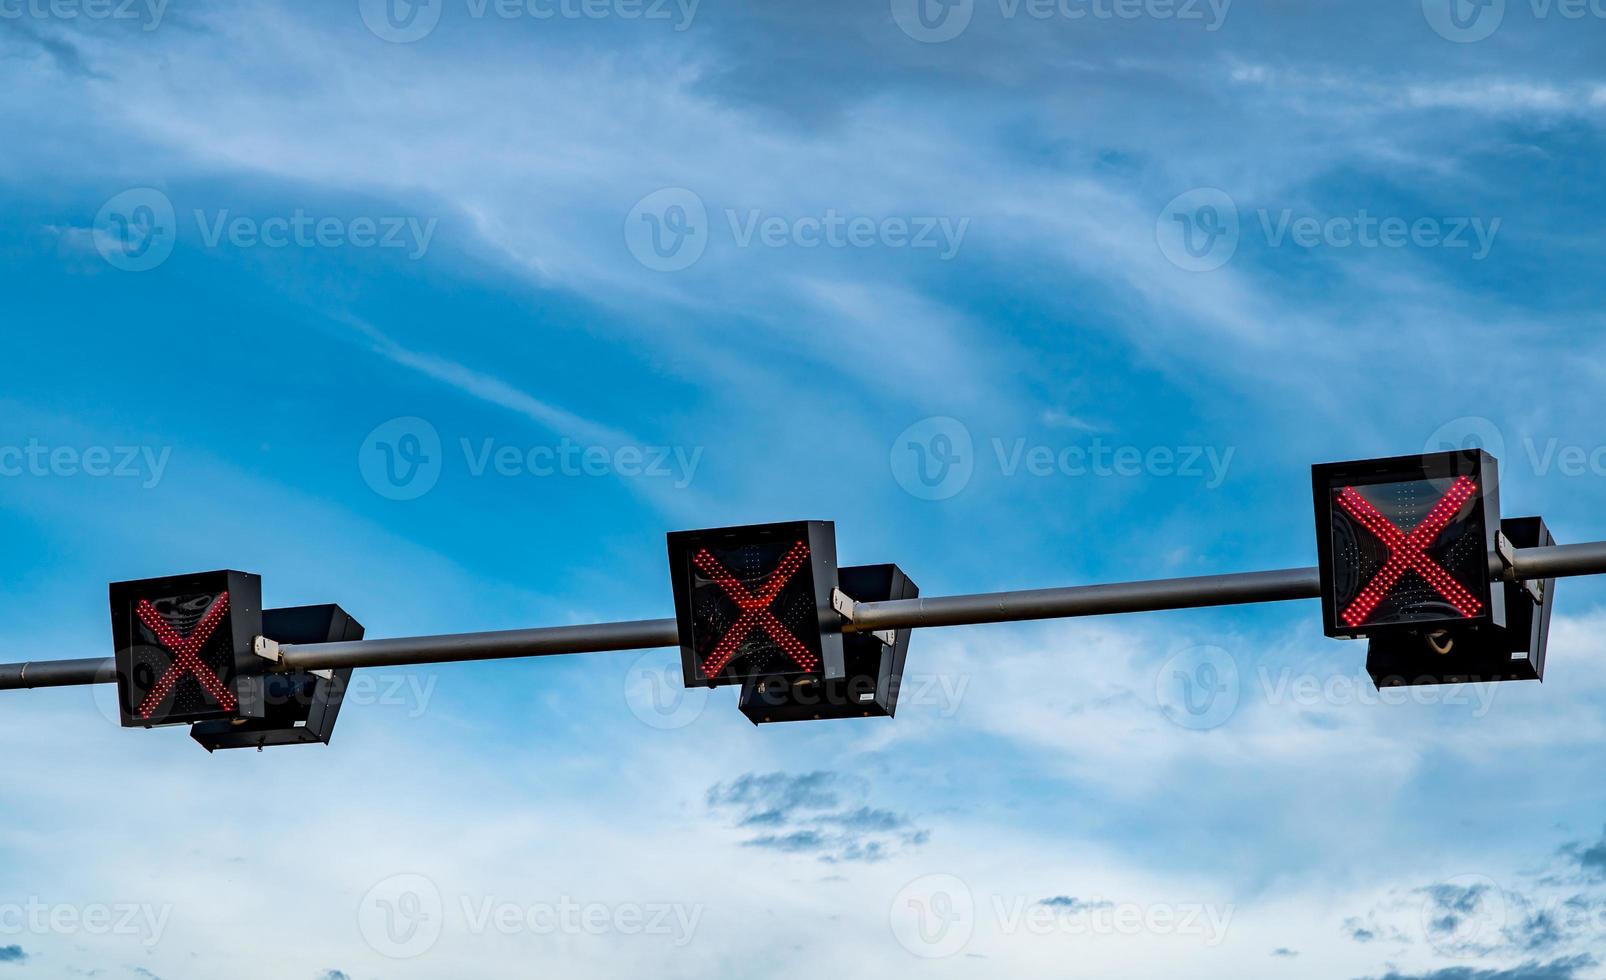 trafiksignal ljus med röd färg på korset tecken på blå himmel och vita moln bakgrund. fel tecken. ingen infartstrafikskylt. röda korset vägledning stopp kör trafikljus. varningstrafikljus. foto